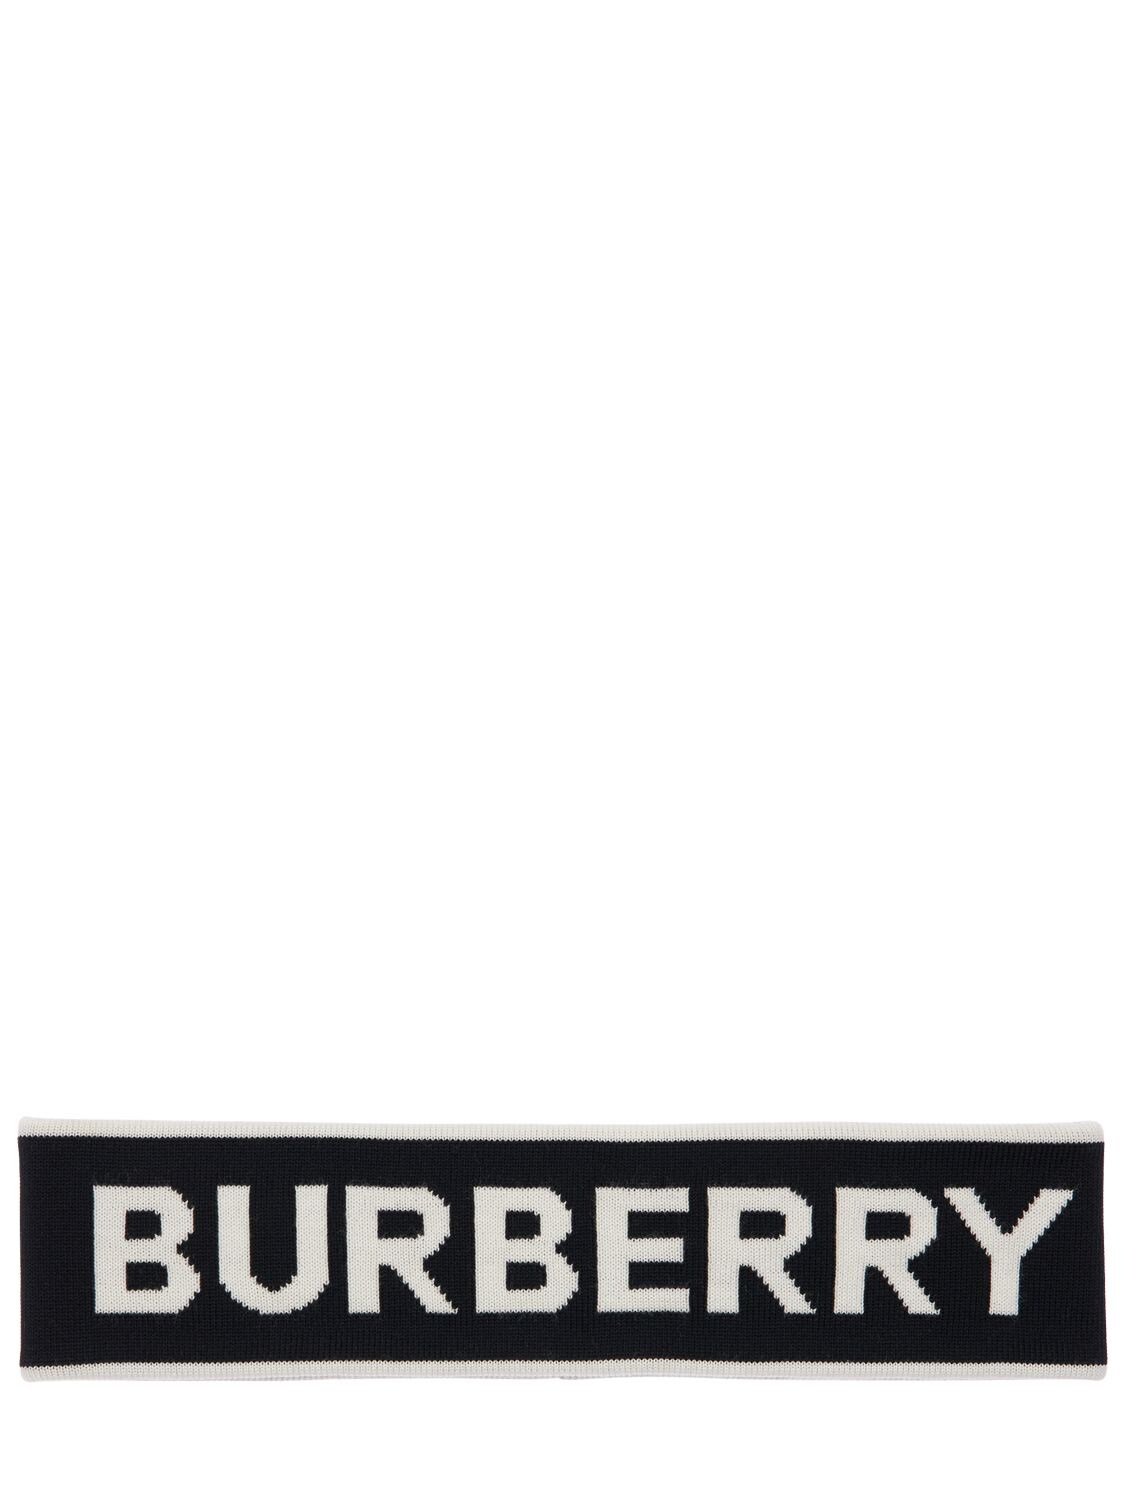 BURBERRY LOGO WOOL BLEND KNIT HEADBAND,71IJT0039-QTY1OTA1